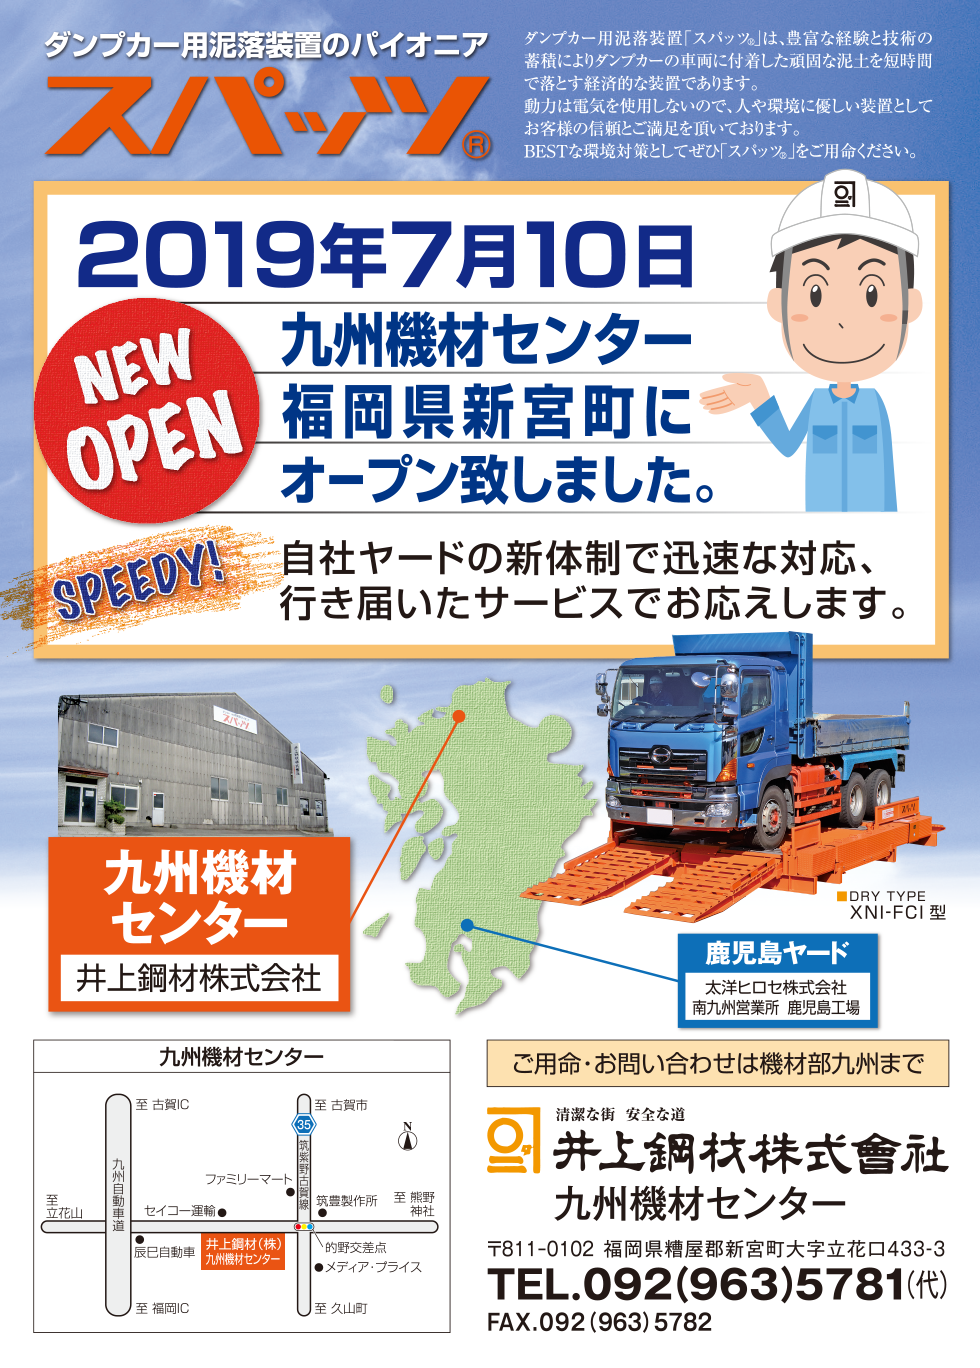 ダンプカー用泥落装置のパイオニアスパッツ®／2019年7月10日福岡県新宮街にオープン致しました。